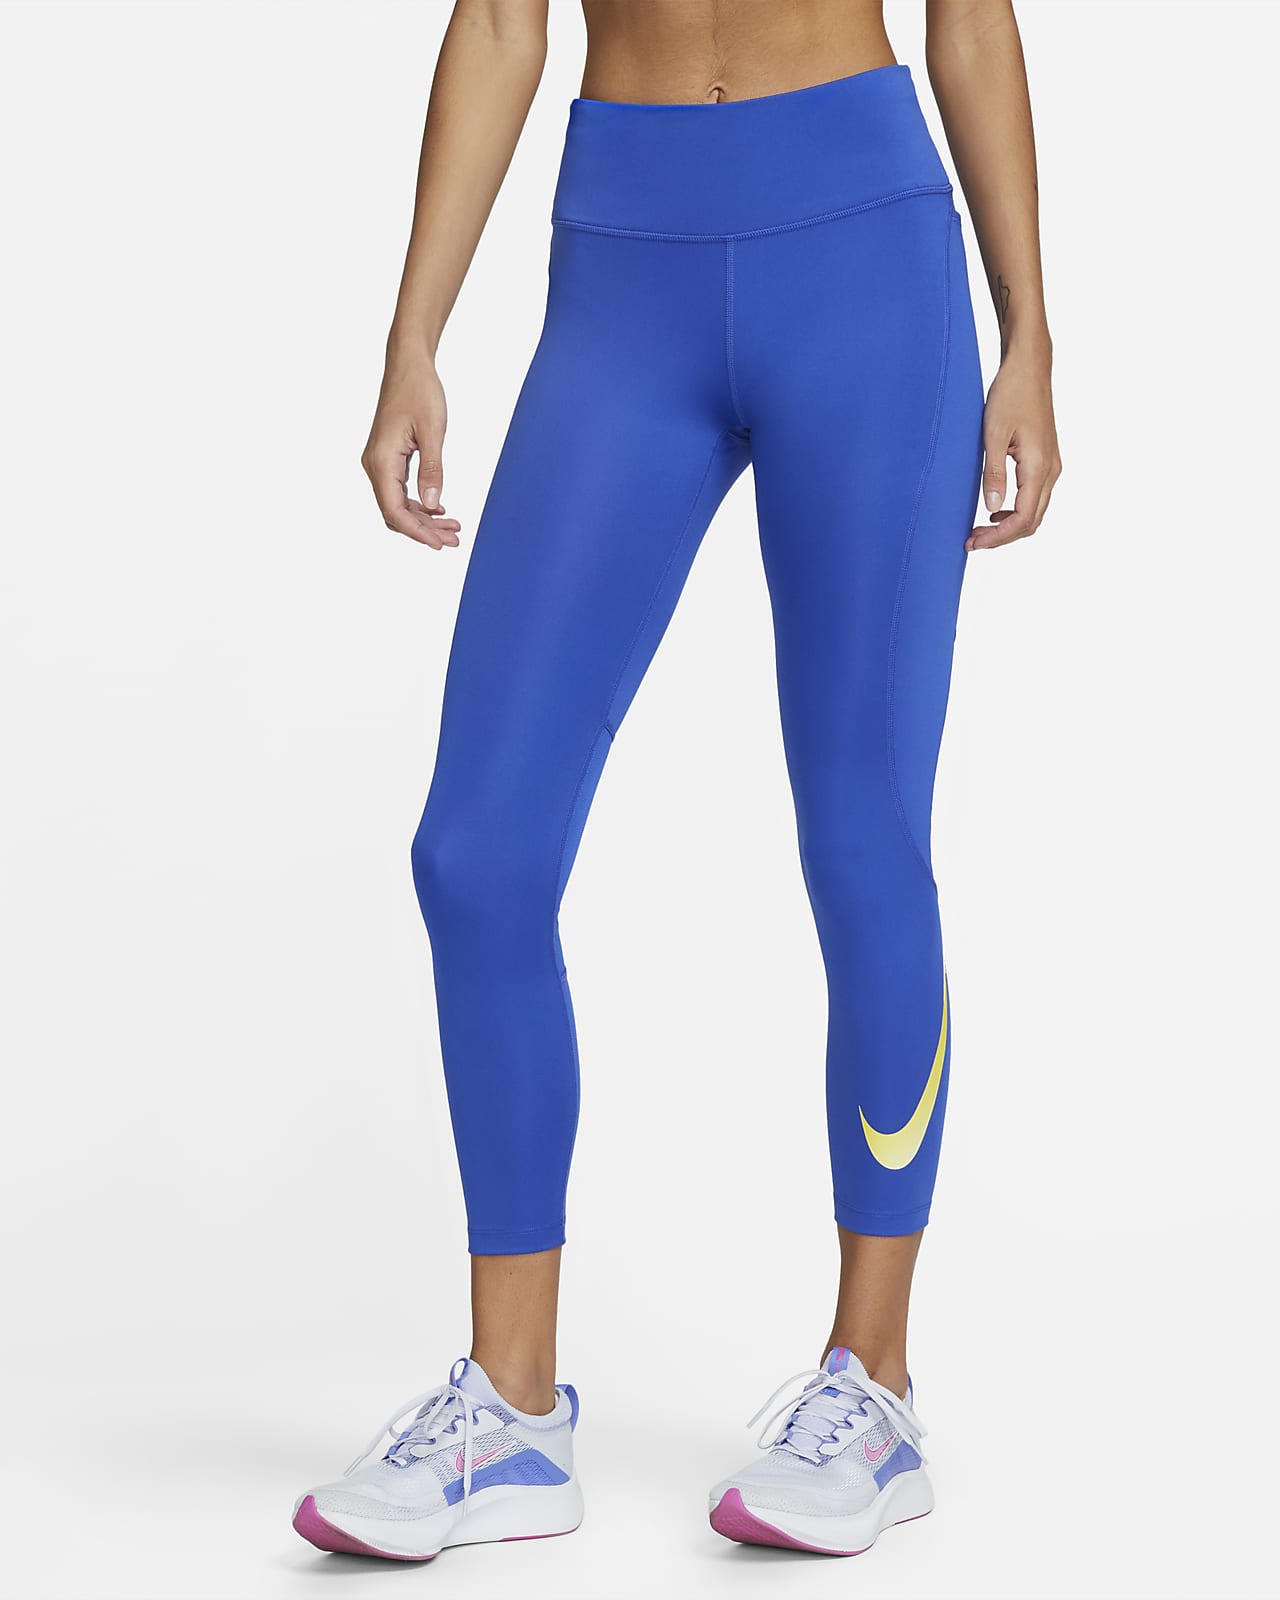 Legging Nike Dri-FIT Air Fast Feminina - Faz a Boa!